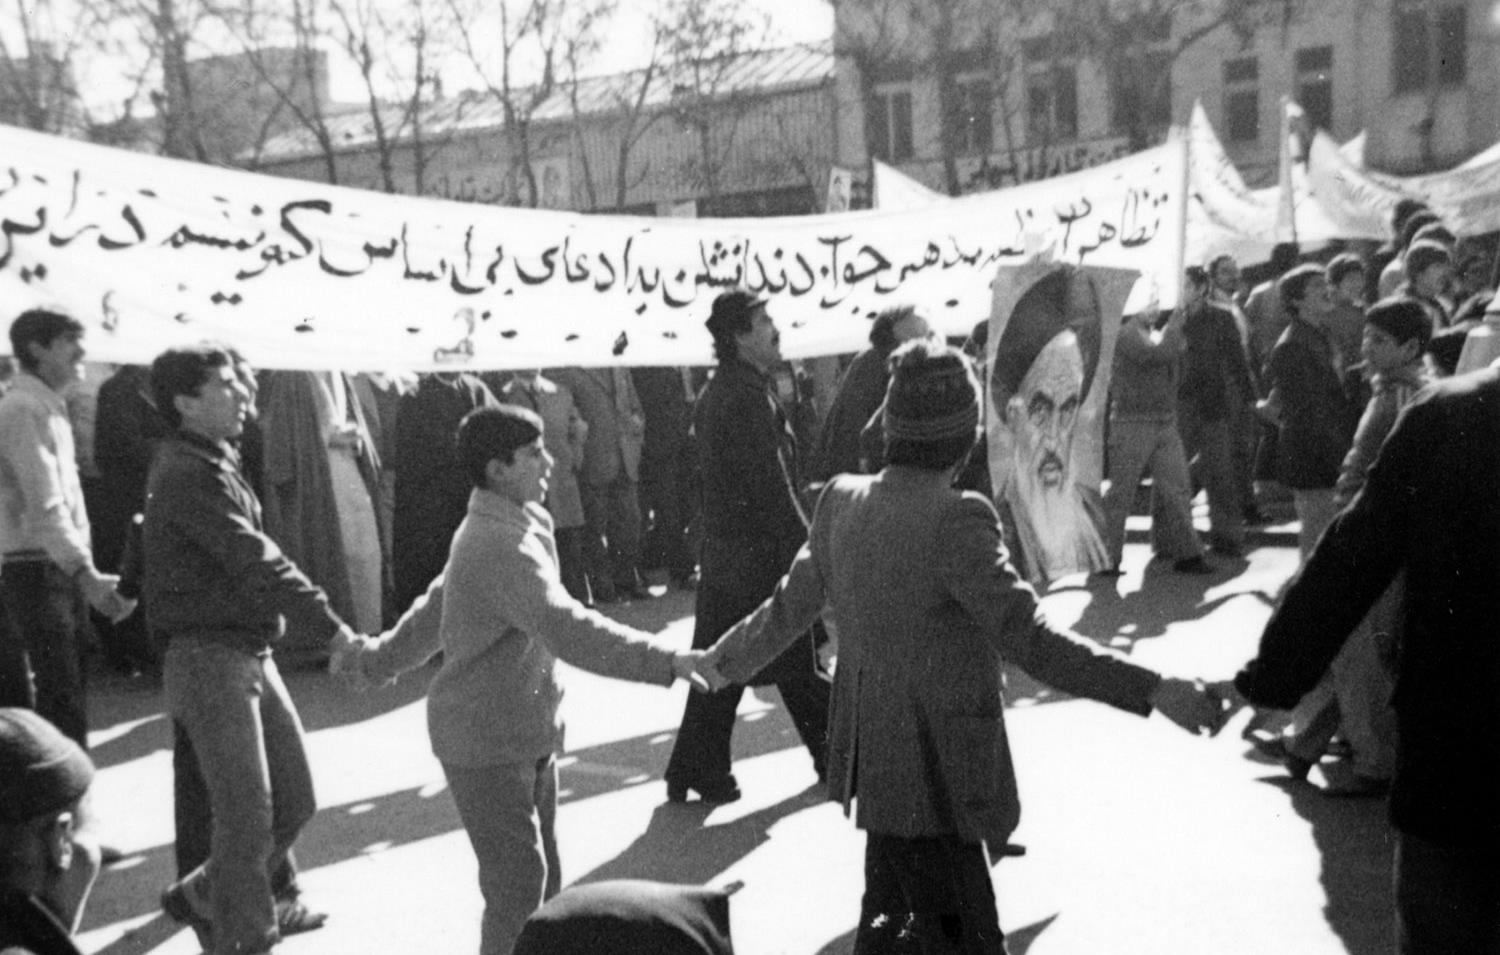 انقلاب اسلامی از دریچه دوربین مردم